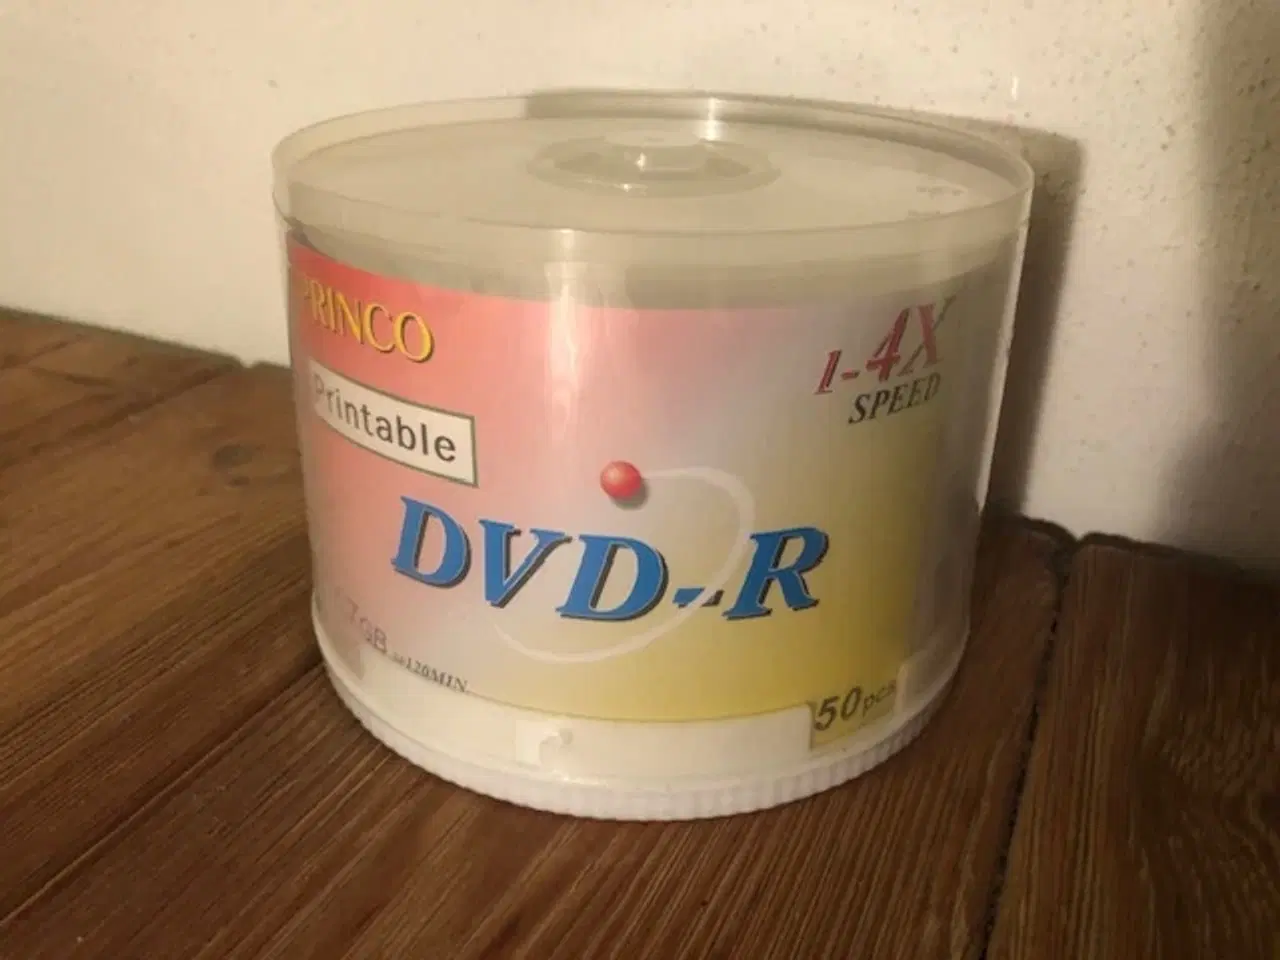 Billede 4 - DVD printable